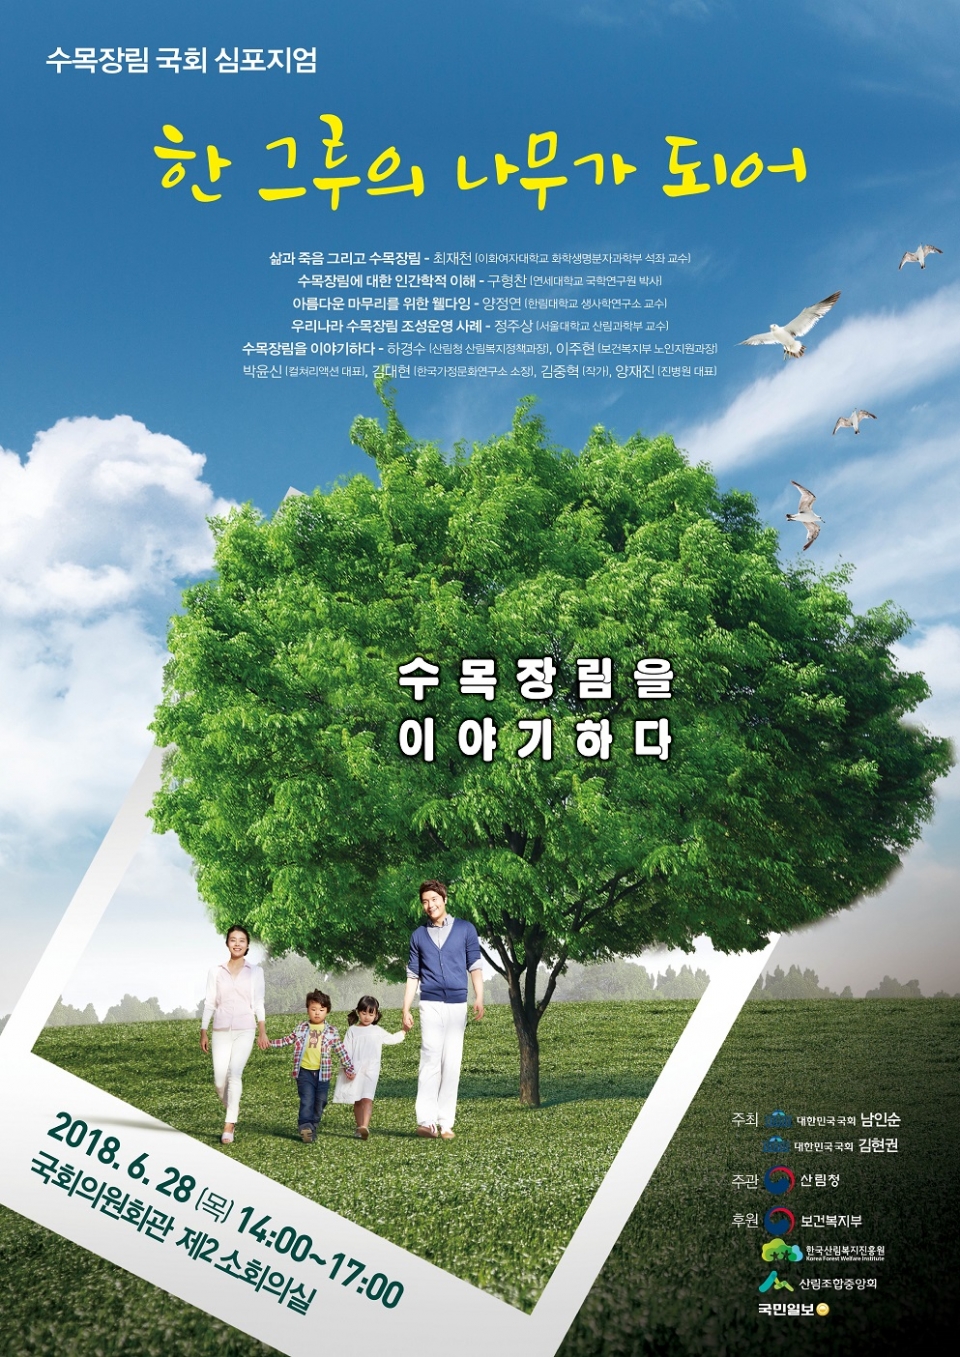 ▲ 수목장림 활성화를 위한 국회 심포지움 포스터